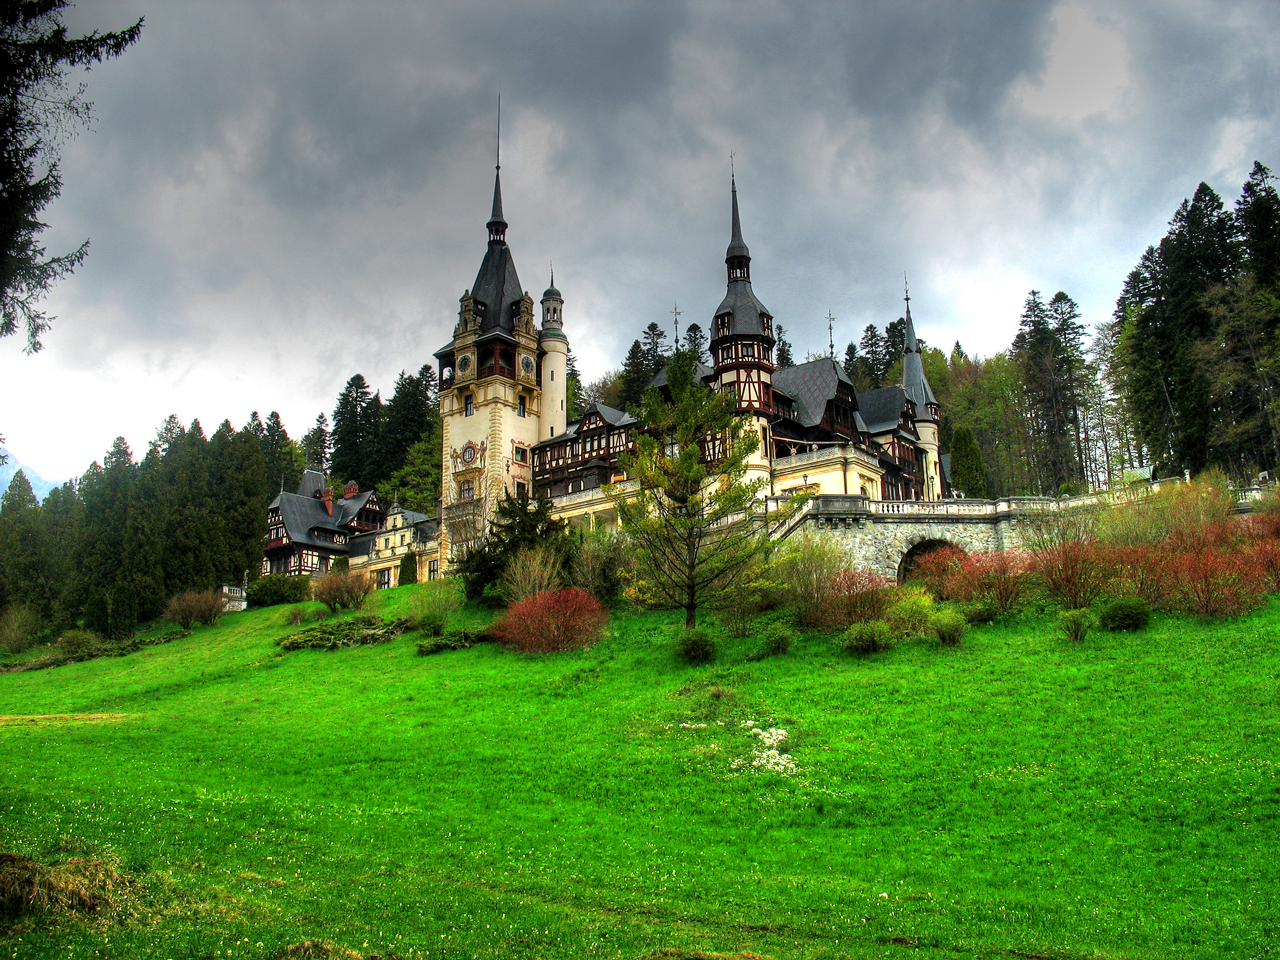 File:Peles-Castle-Sinaia-Romania.jpg - Wikipedia